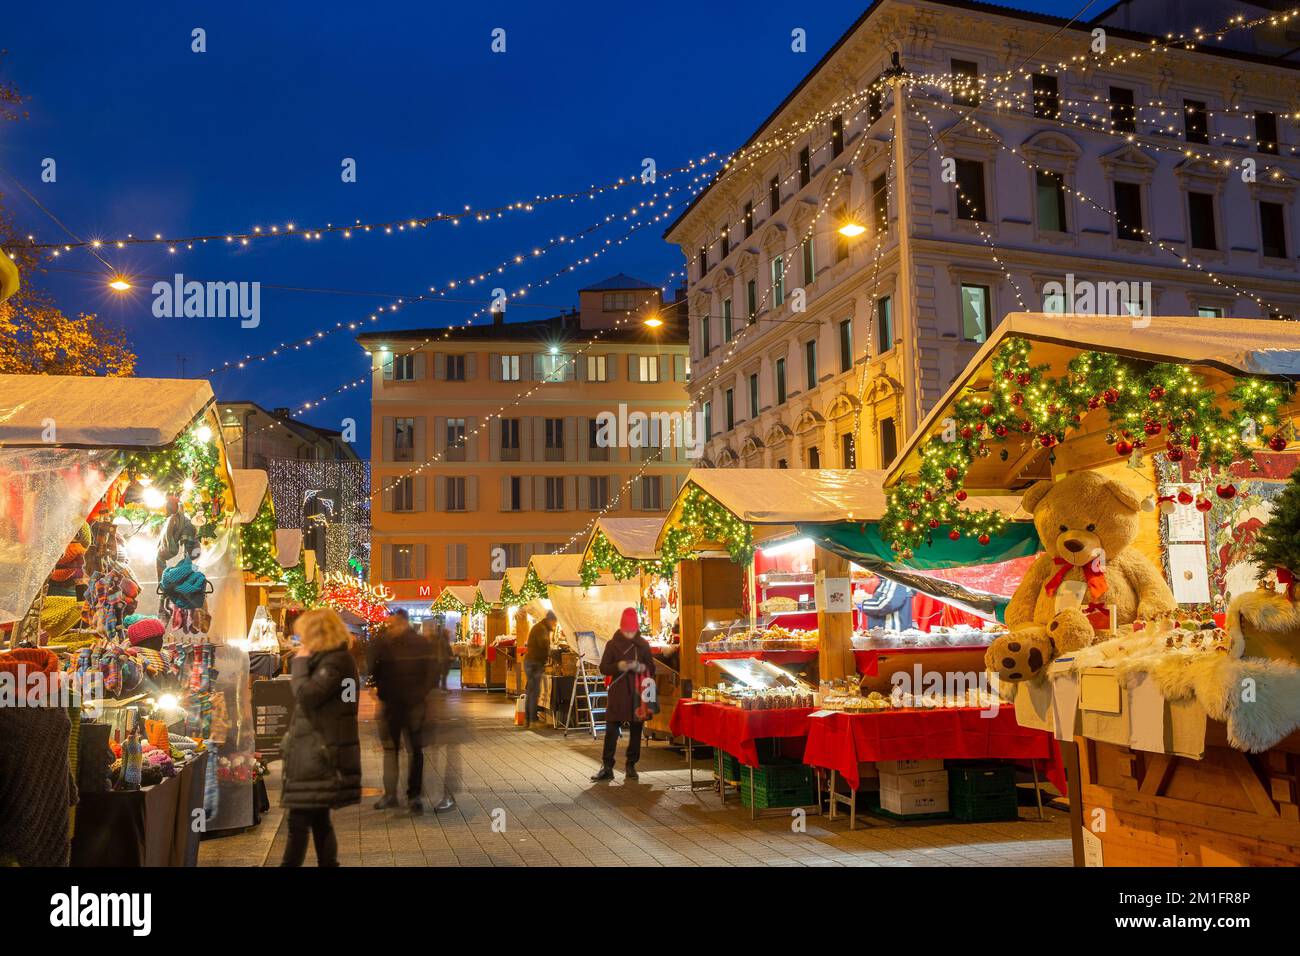 Weihnachtsmarkt in Lugano neben dem Riva Giocondo Albertolli - die Bewegung der Menschen ist verschwommen! Einige Weihnachtsartikel und Blue Hour in t Stockfoto